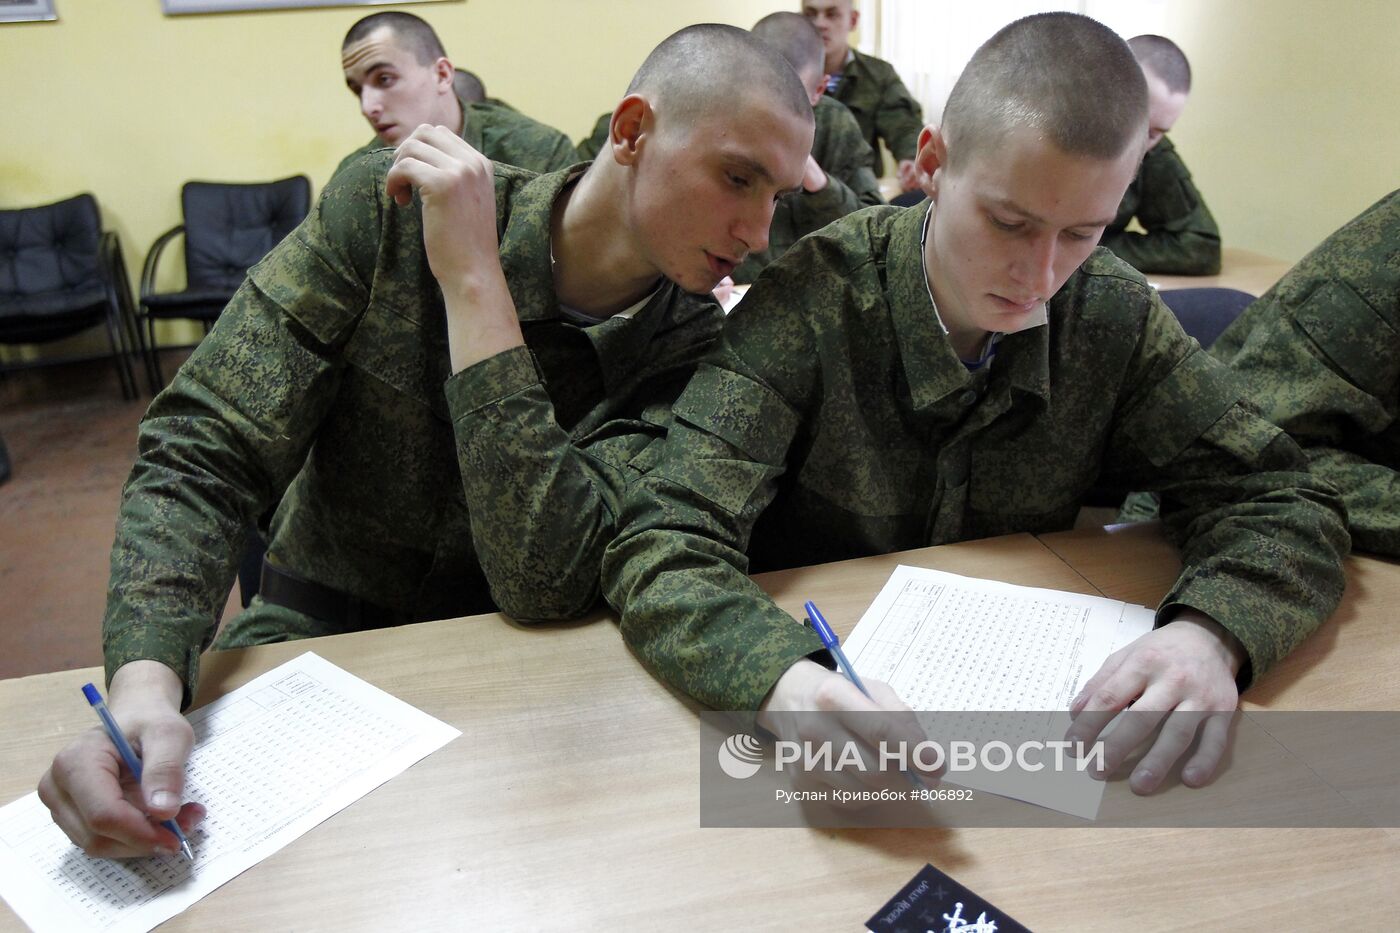 Прибытие новобранцев на службу в ВДВ в город Иваново